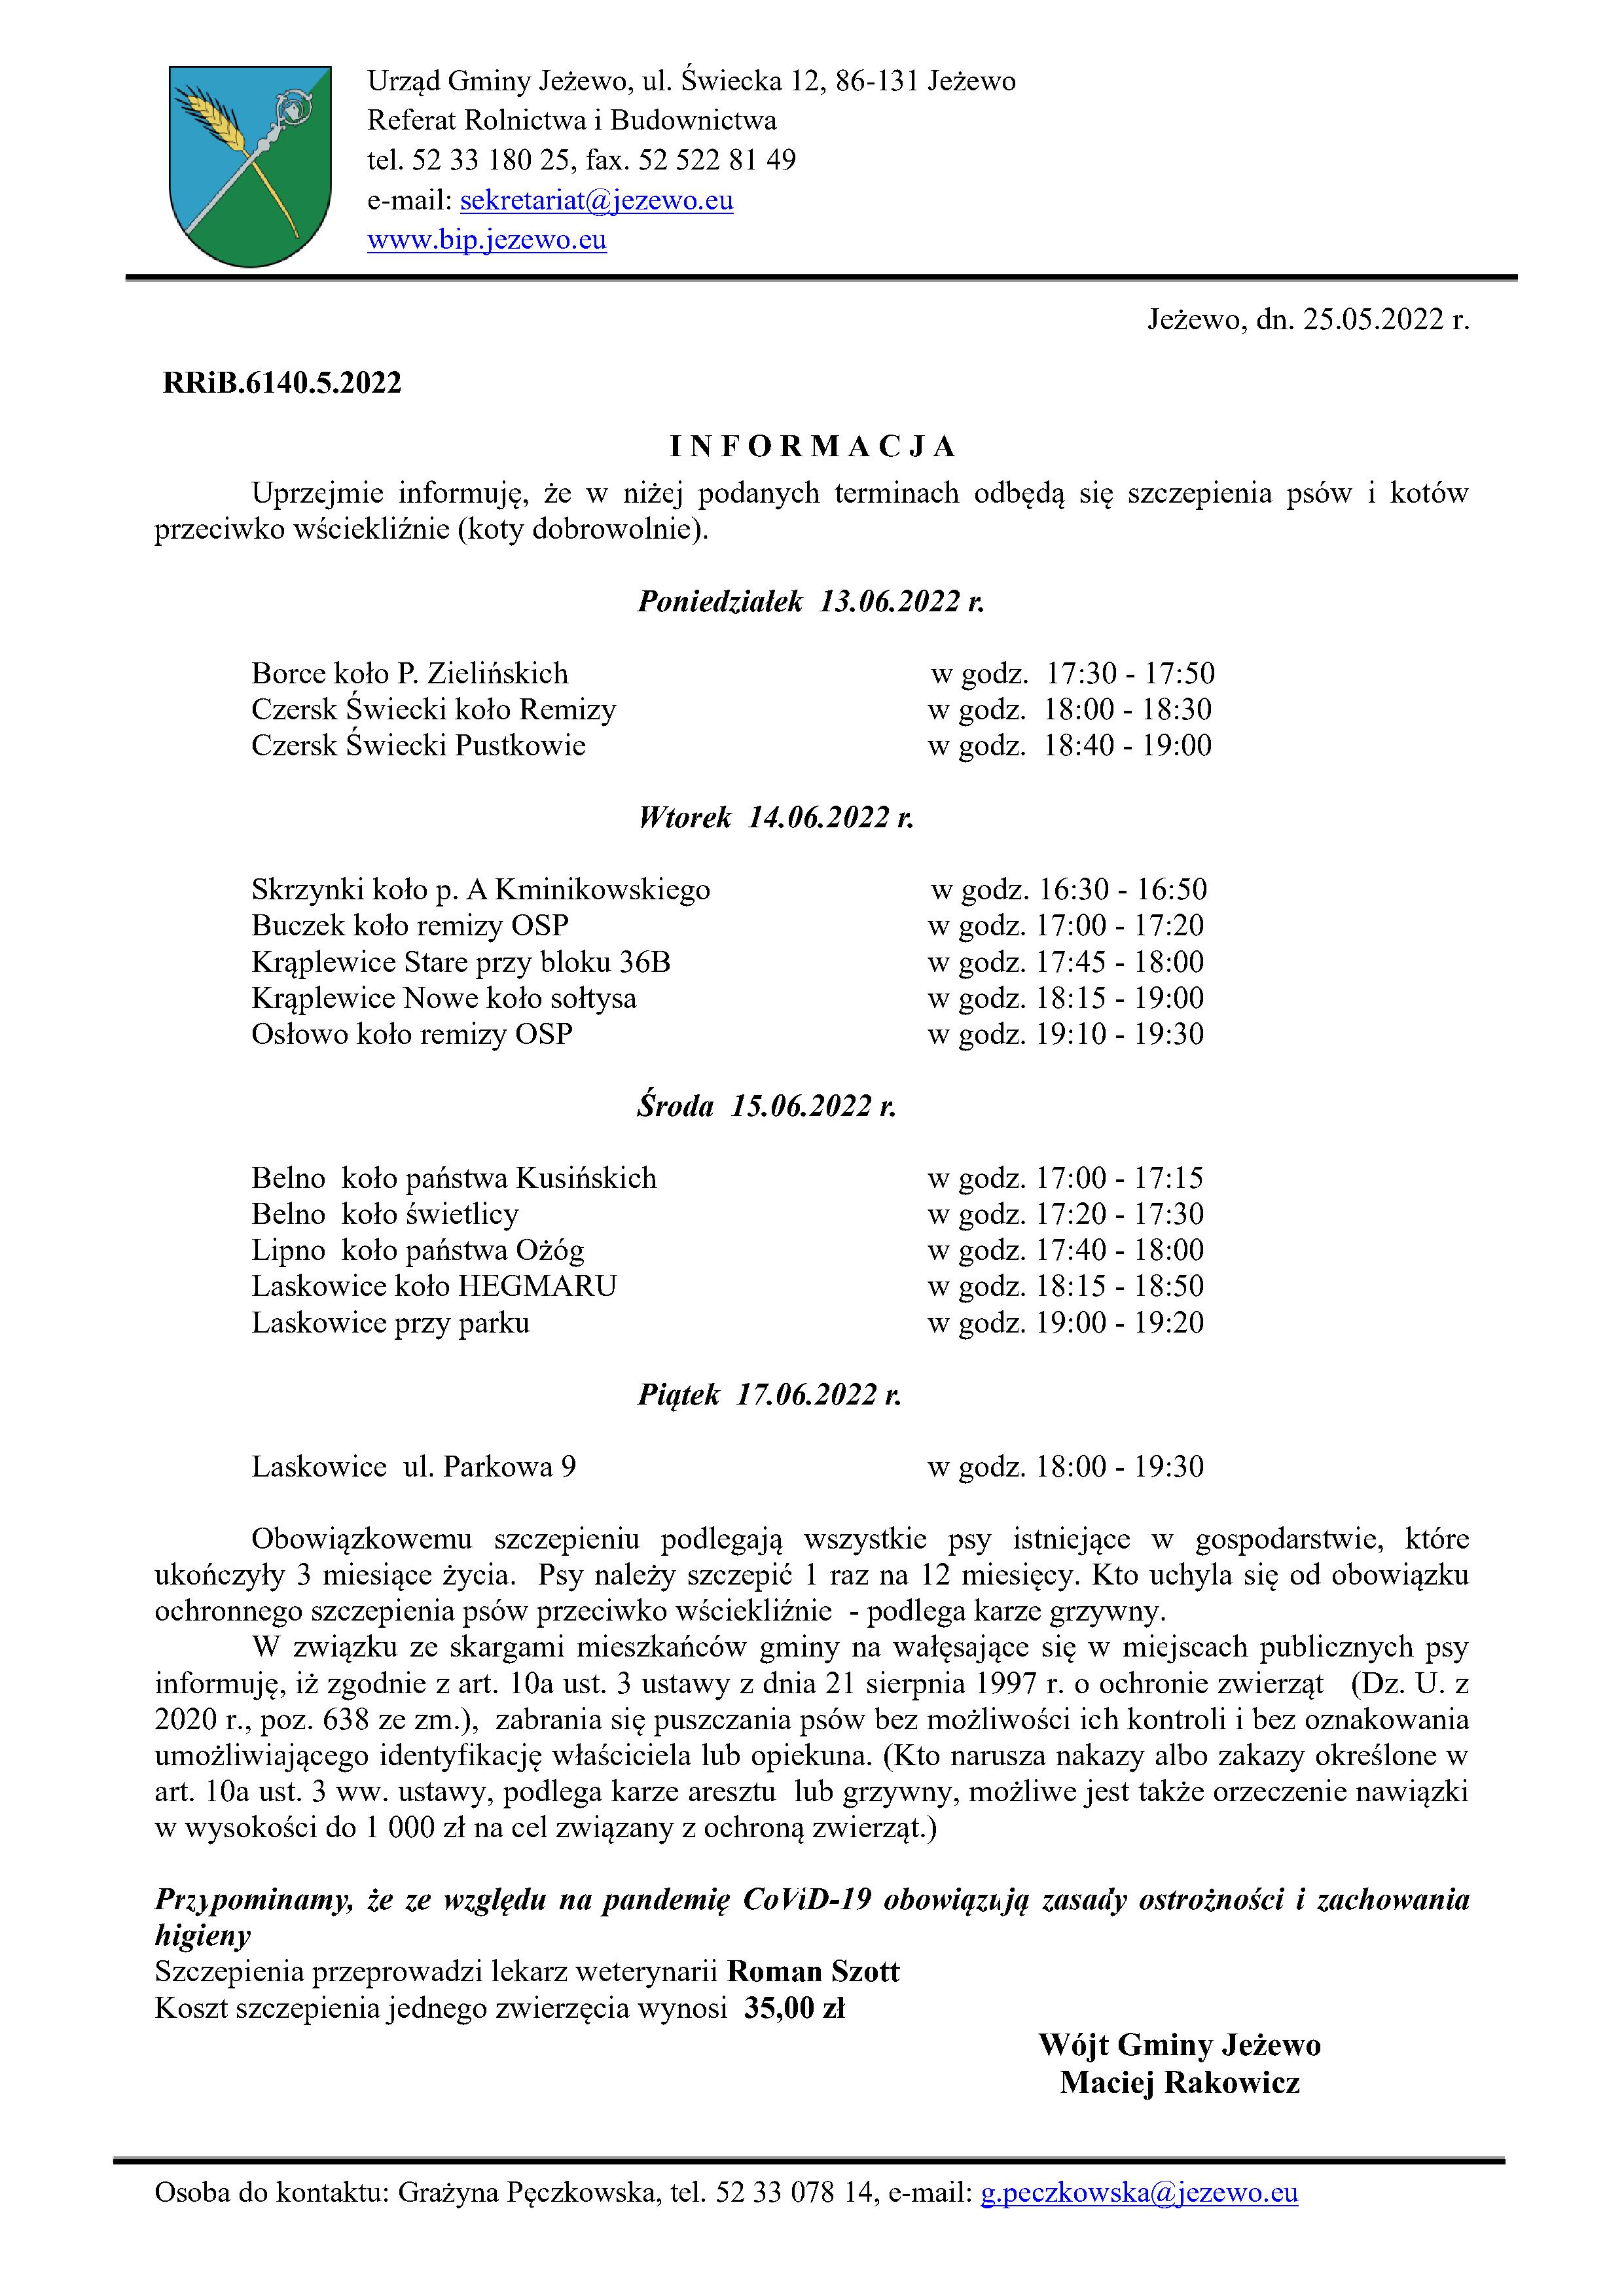 Informacja w sprawie szczepienia psów i kotów 13-17.06.2022 r.